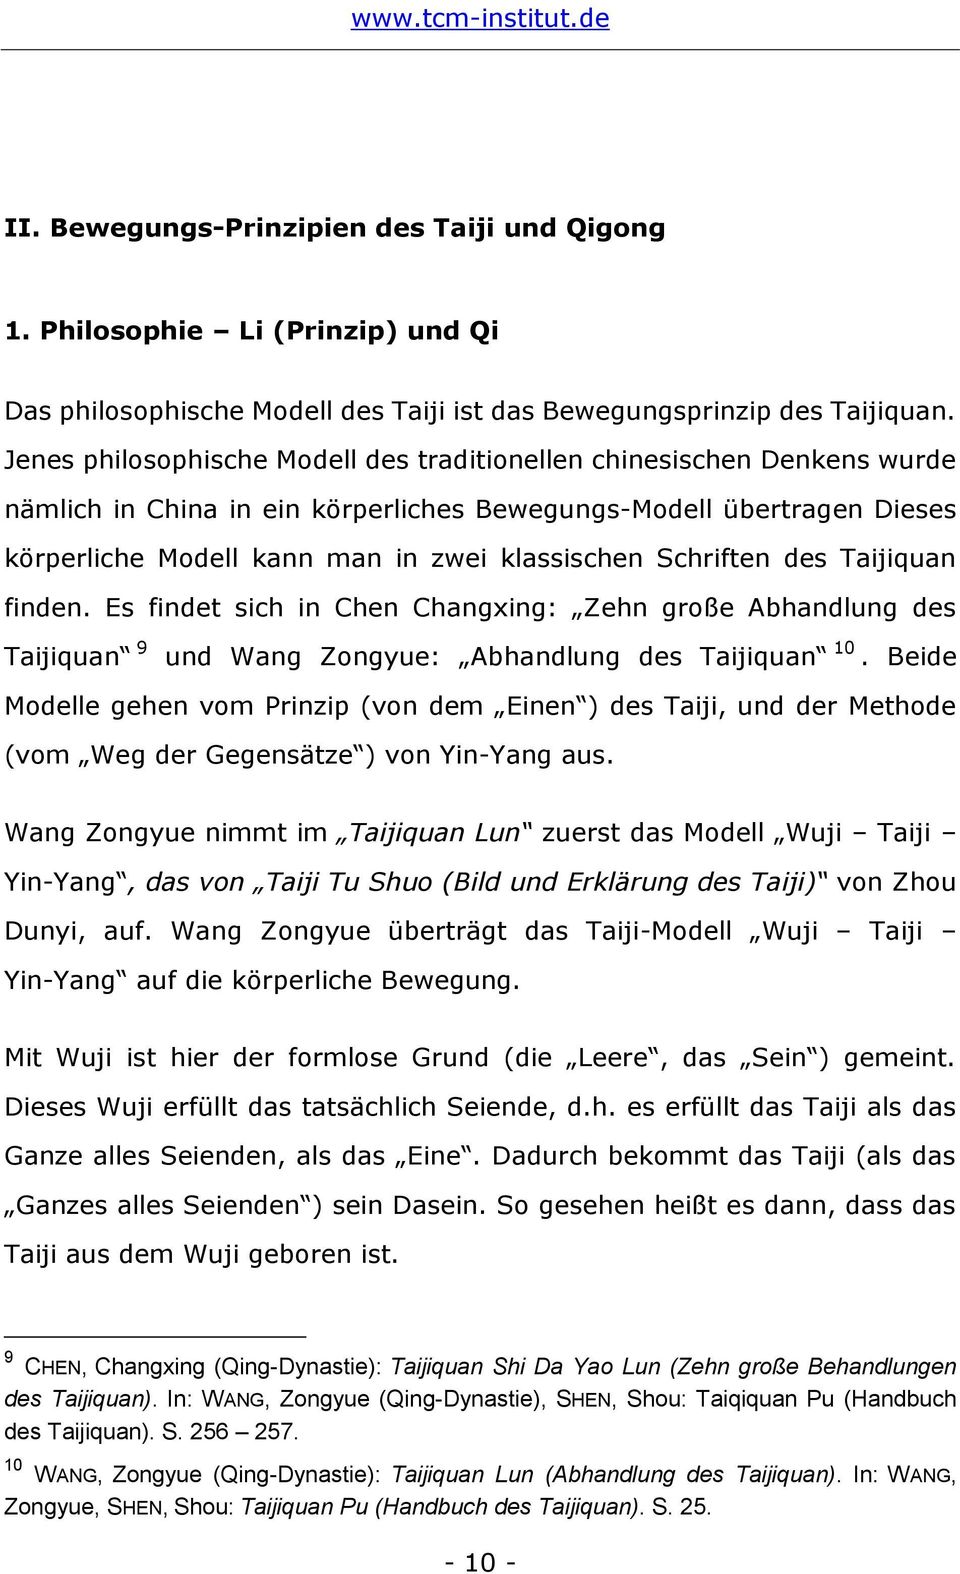 Schriften des Taijiquan finden. Es findet sich in Chen Changxing: Zehn große Abhandlung des Taijiquan 9 und Wang Zongyue: Abhandlung des Taijiquan 10.